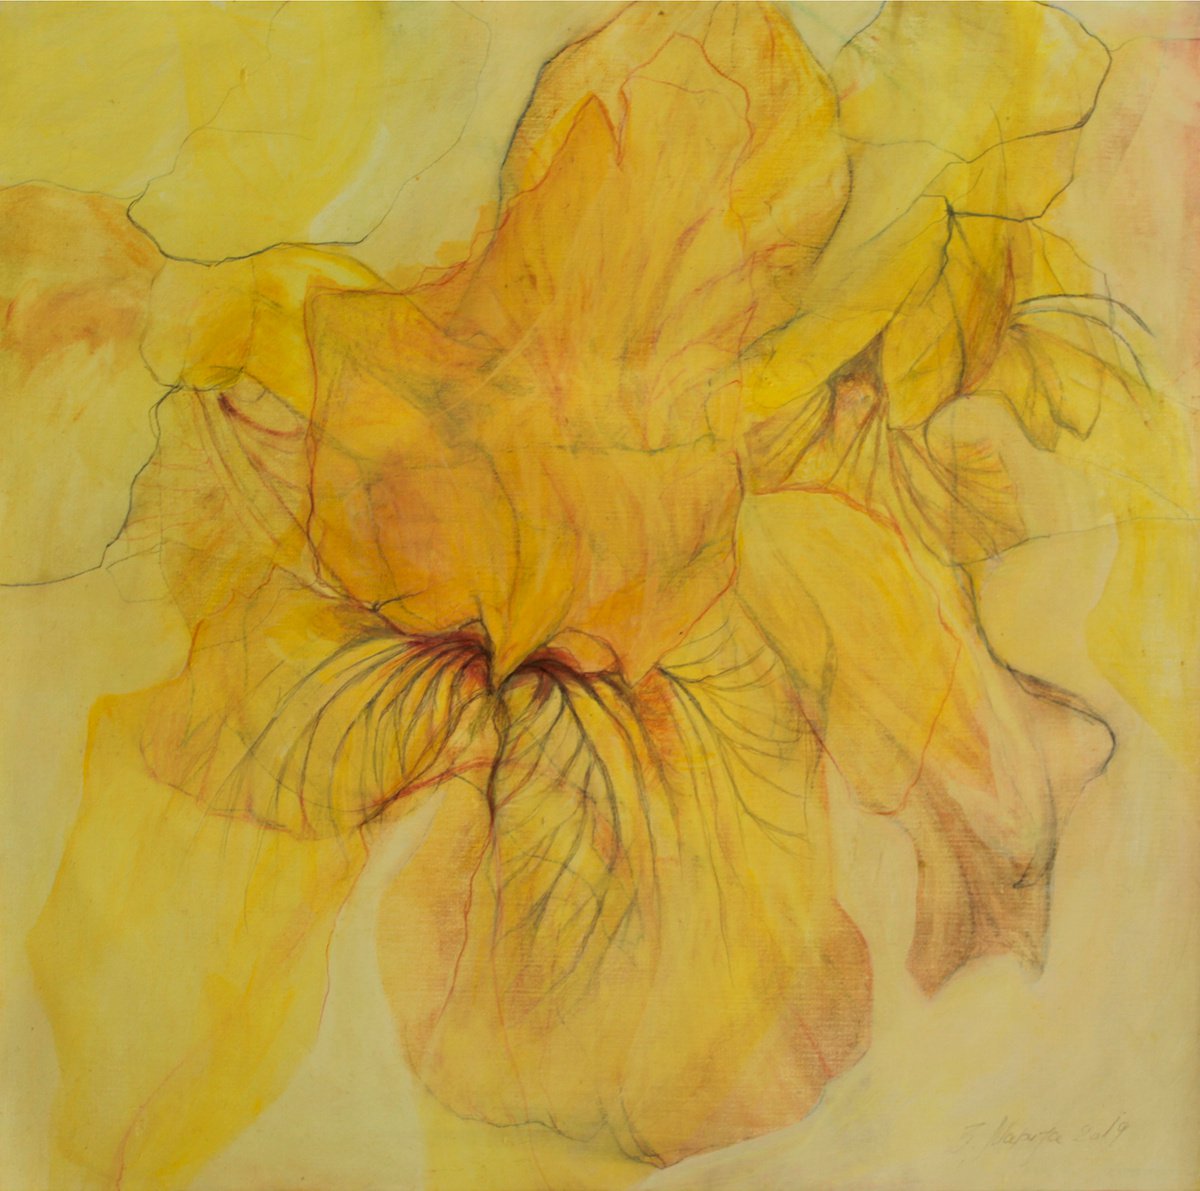 Yellow Iris by Marija Zdravkovic